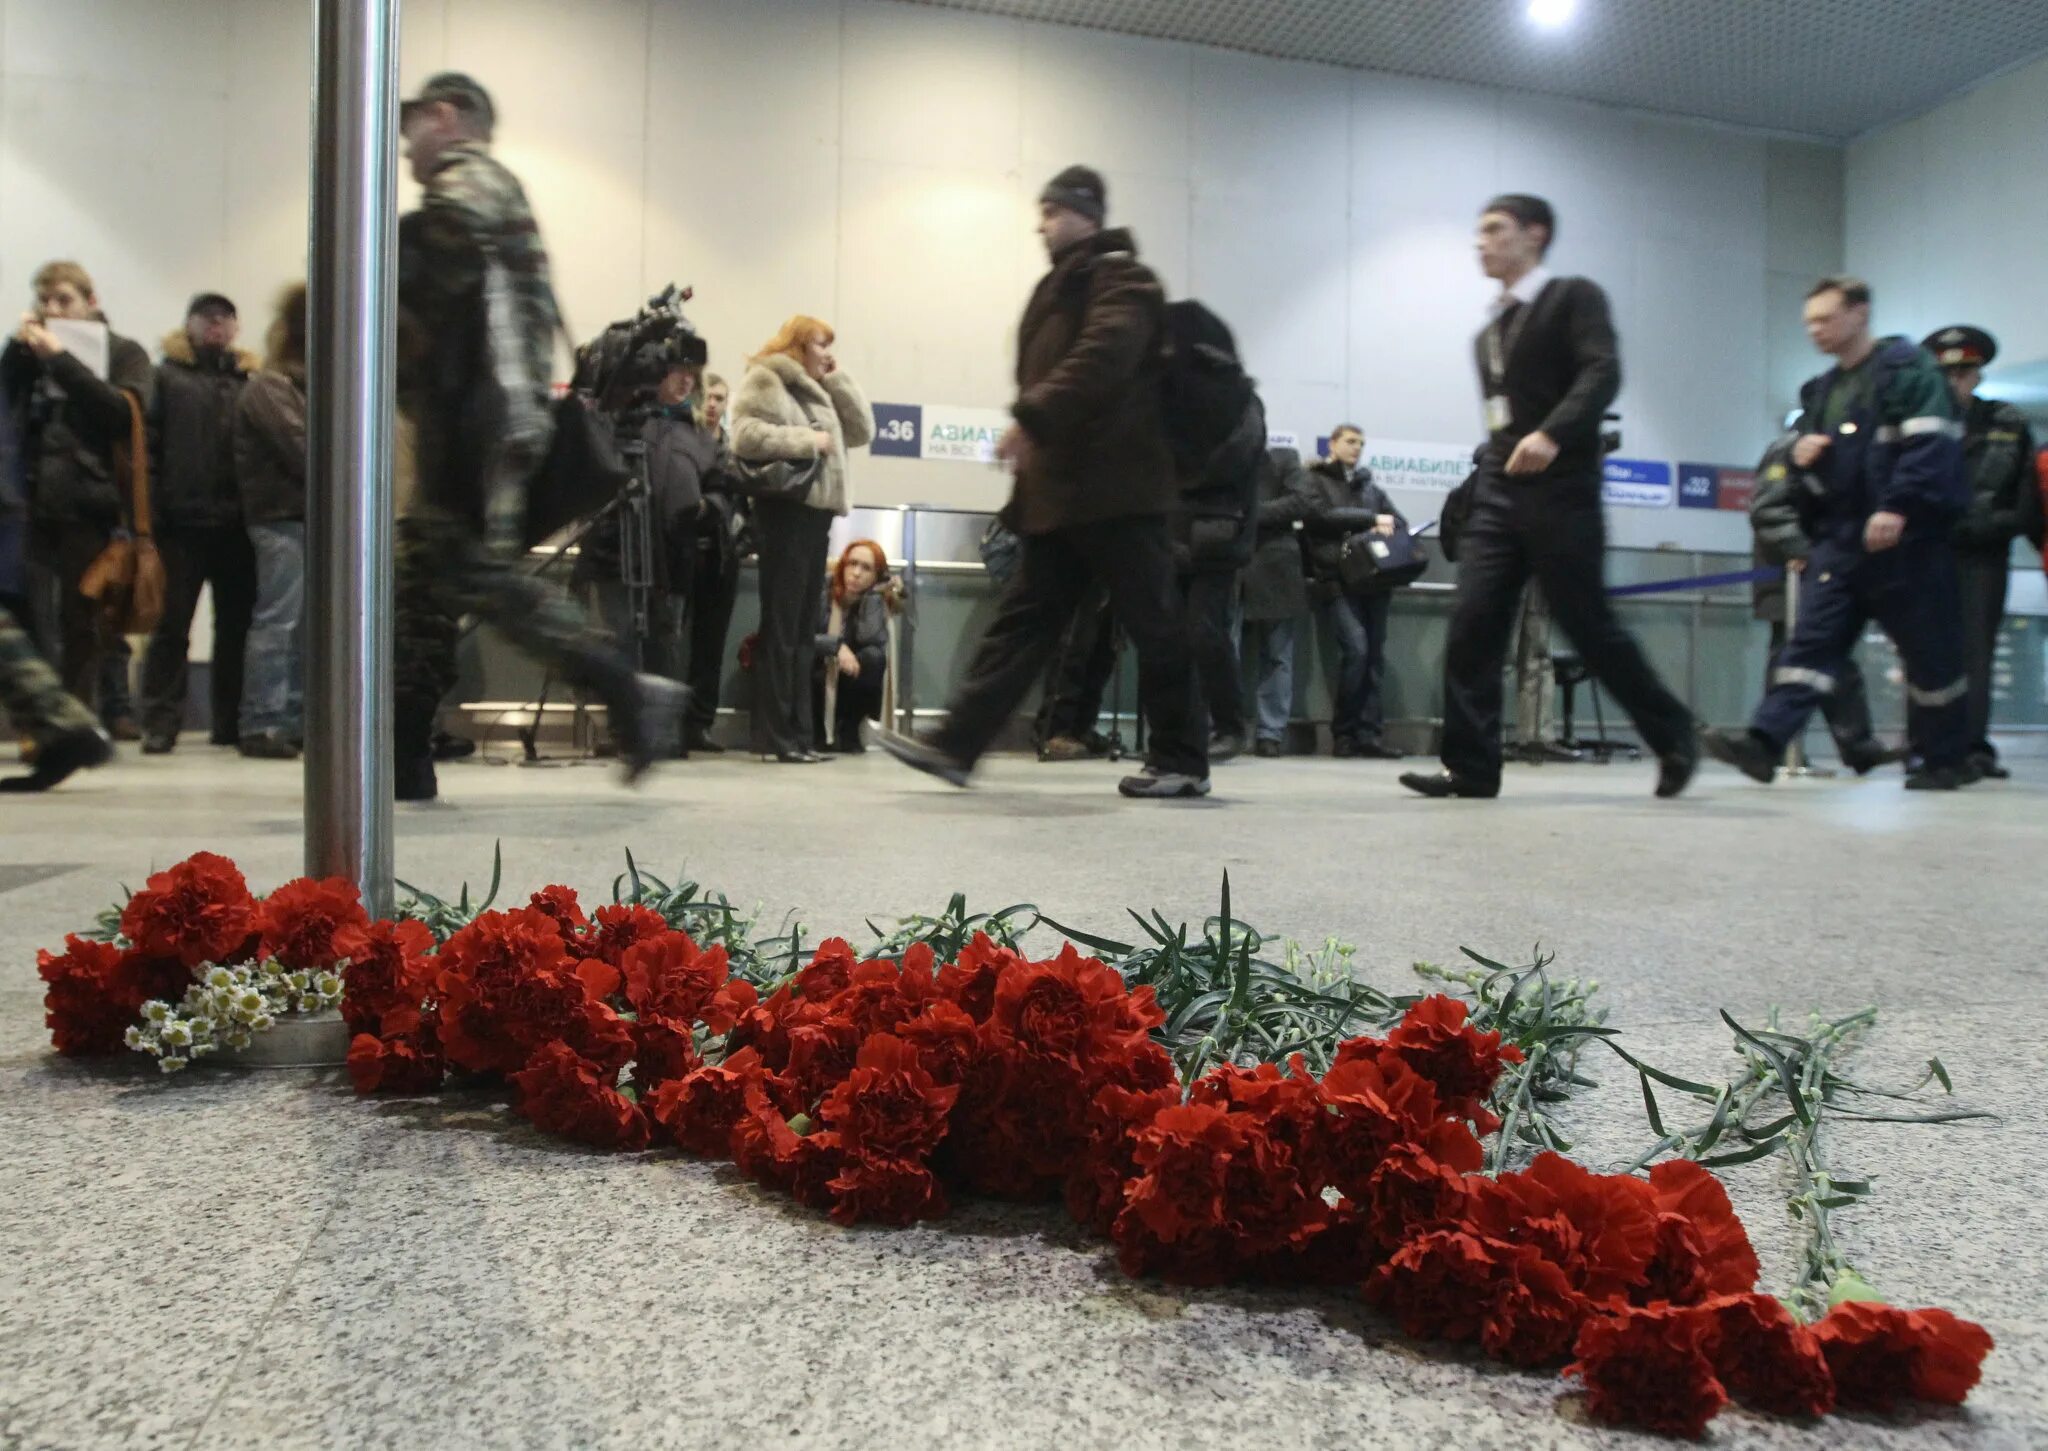 Что сейчас происходит в москве после теракта. Взрыв в аэропорту Домодедово 2011. Теракт 24 января 2011 аэропорт Домодедово. 2011 24 Января взрыв в аэропорту Домодедово.